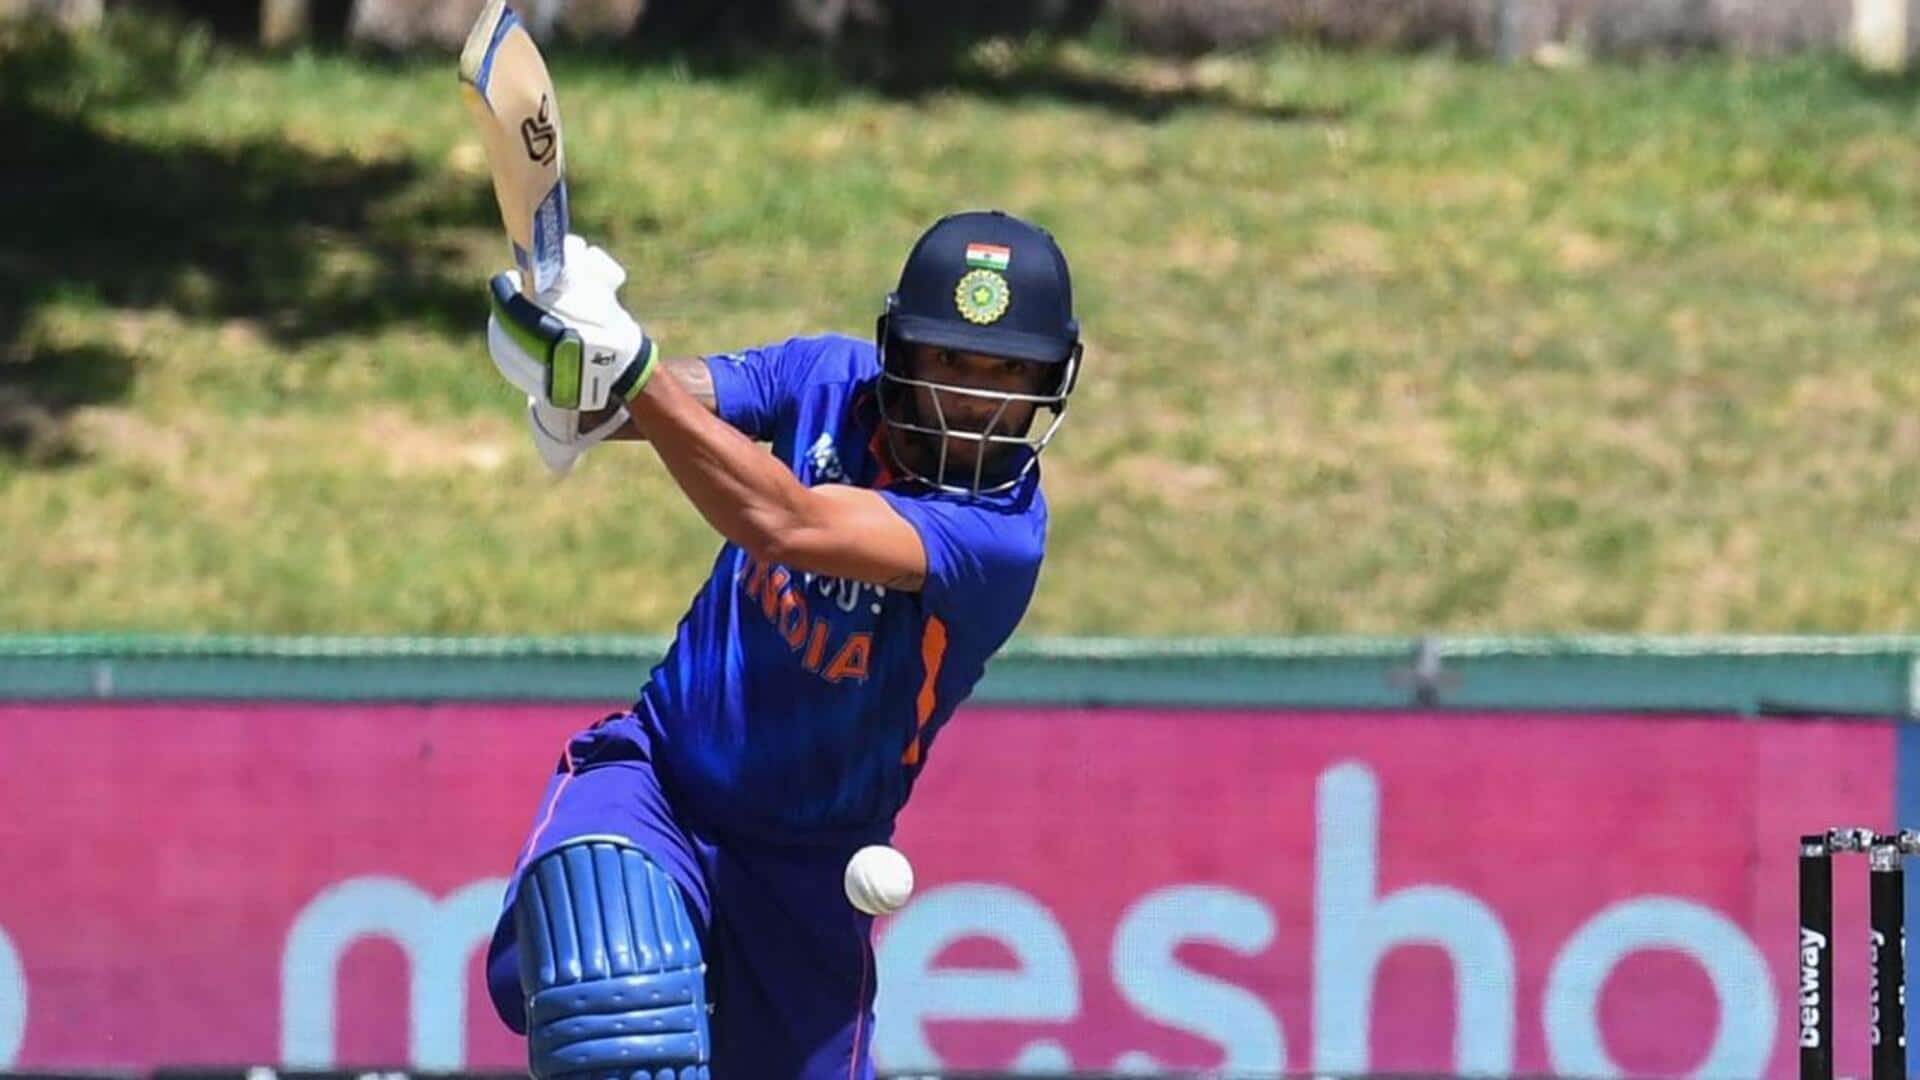 शिखर धवन हो सकते हैं एशियन गेम्स में भारतीय क्रिकेट टीम के कप्तान- रिपोर्ट